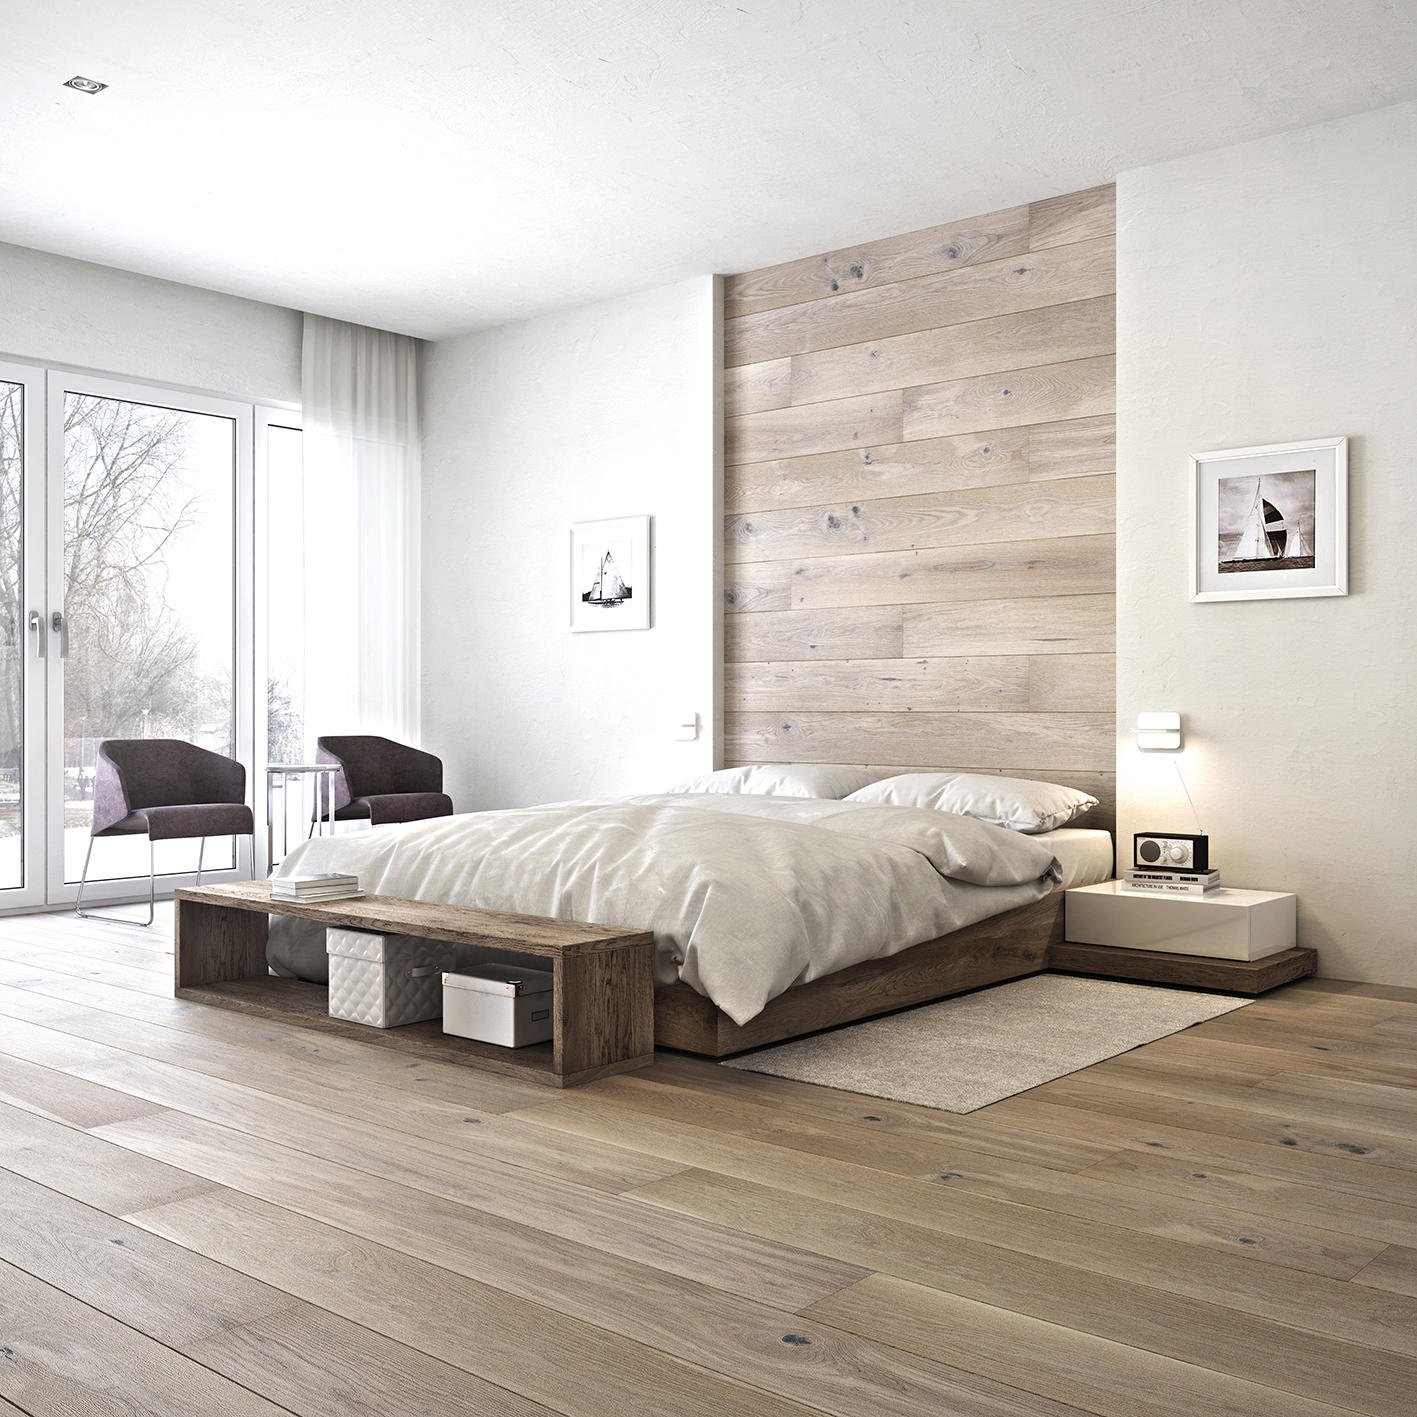 Ламинат на стене в спальне (53 фото): дизайн оригинальной и недорогой отделки в интерьере